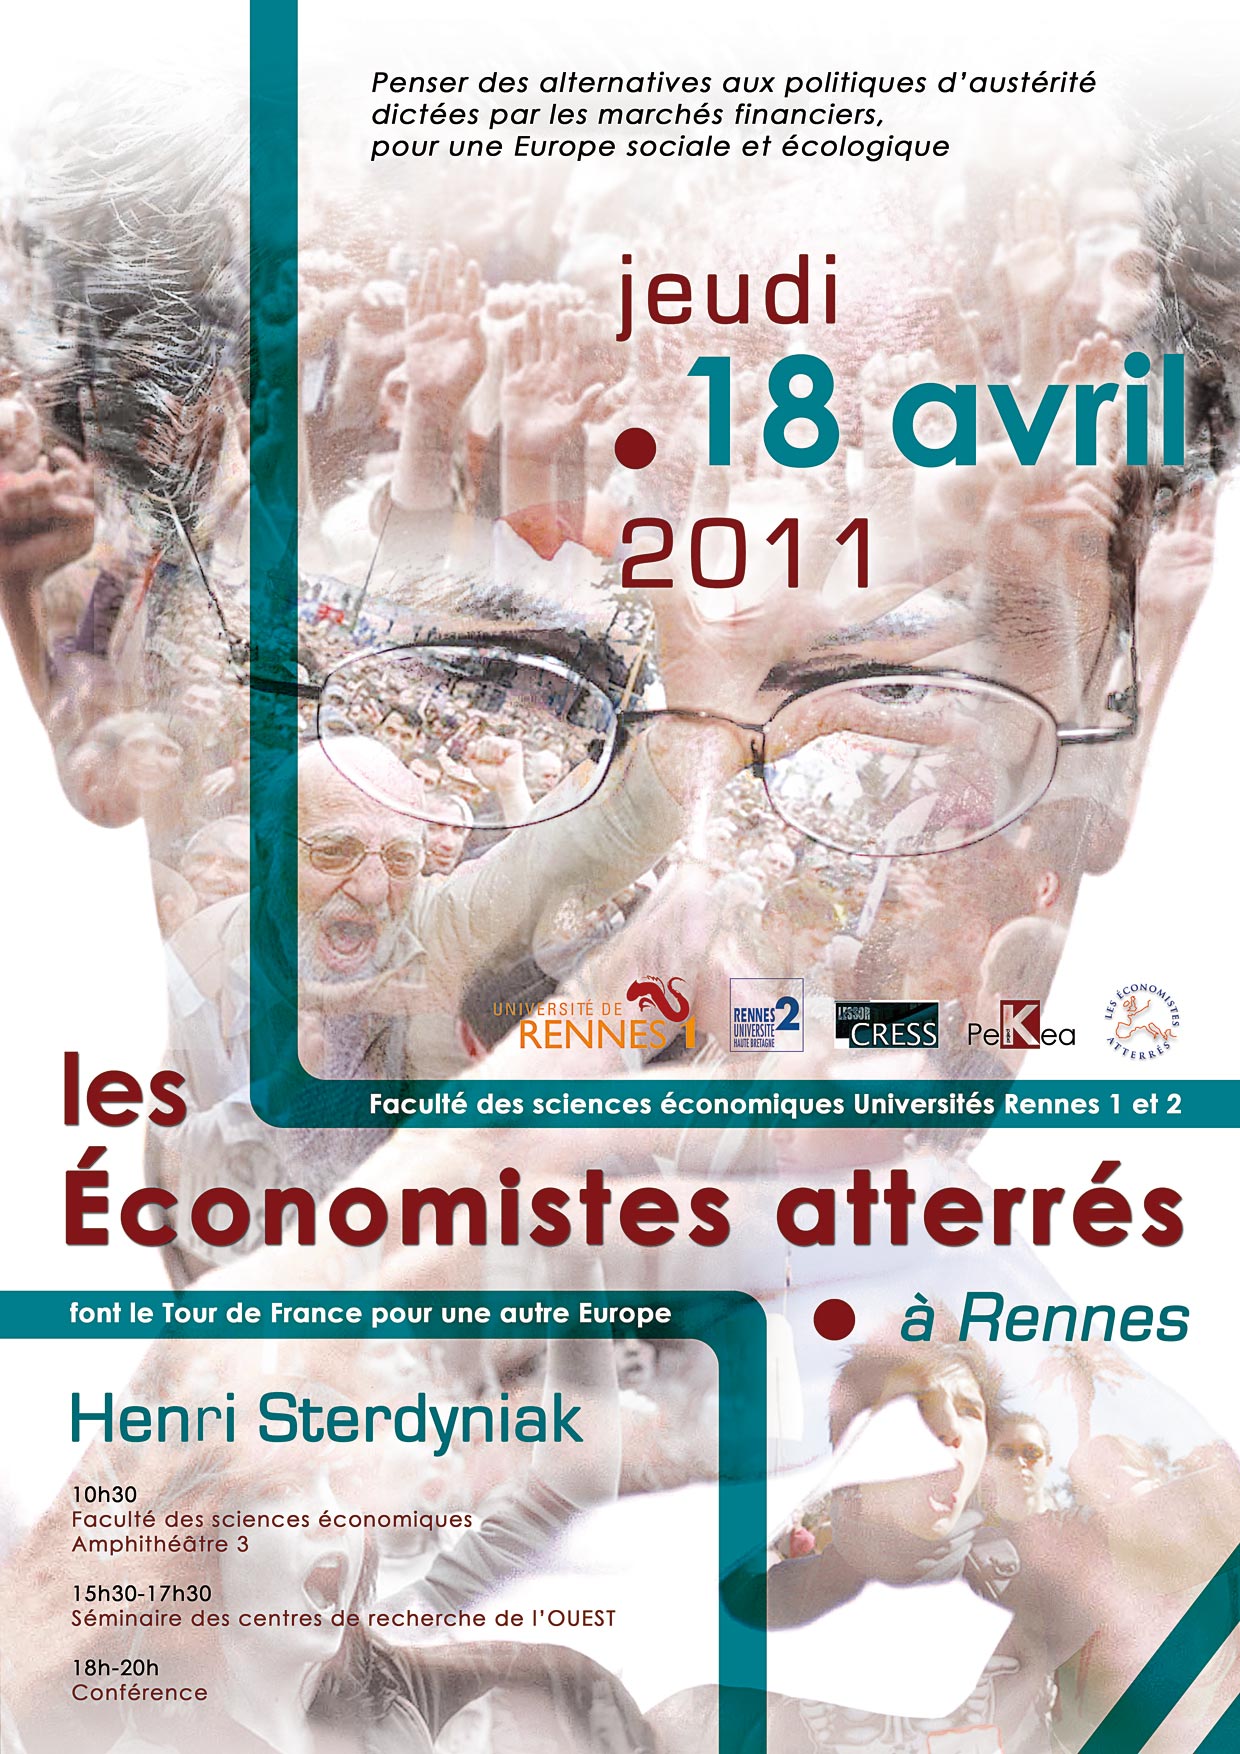 affiche de la conférence des économistes atterrés